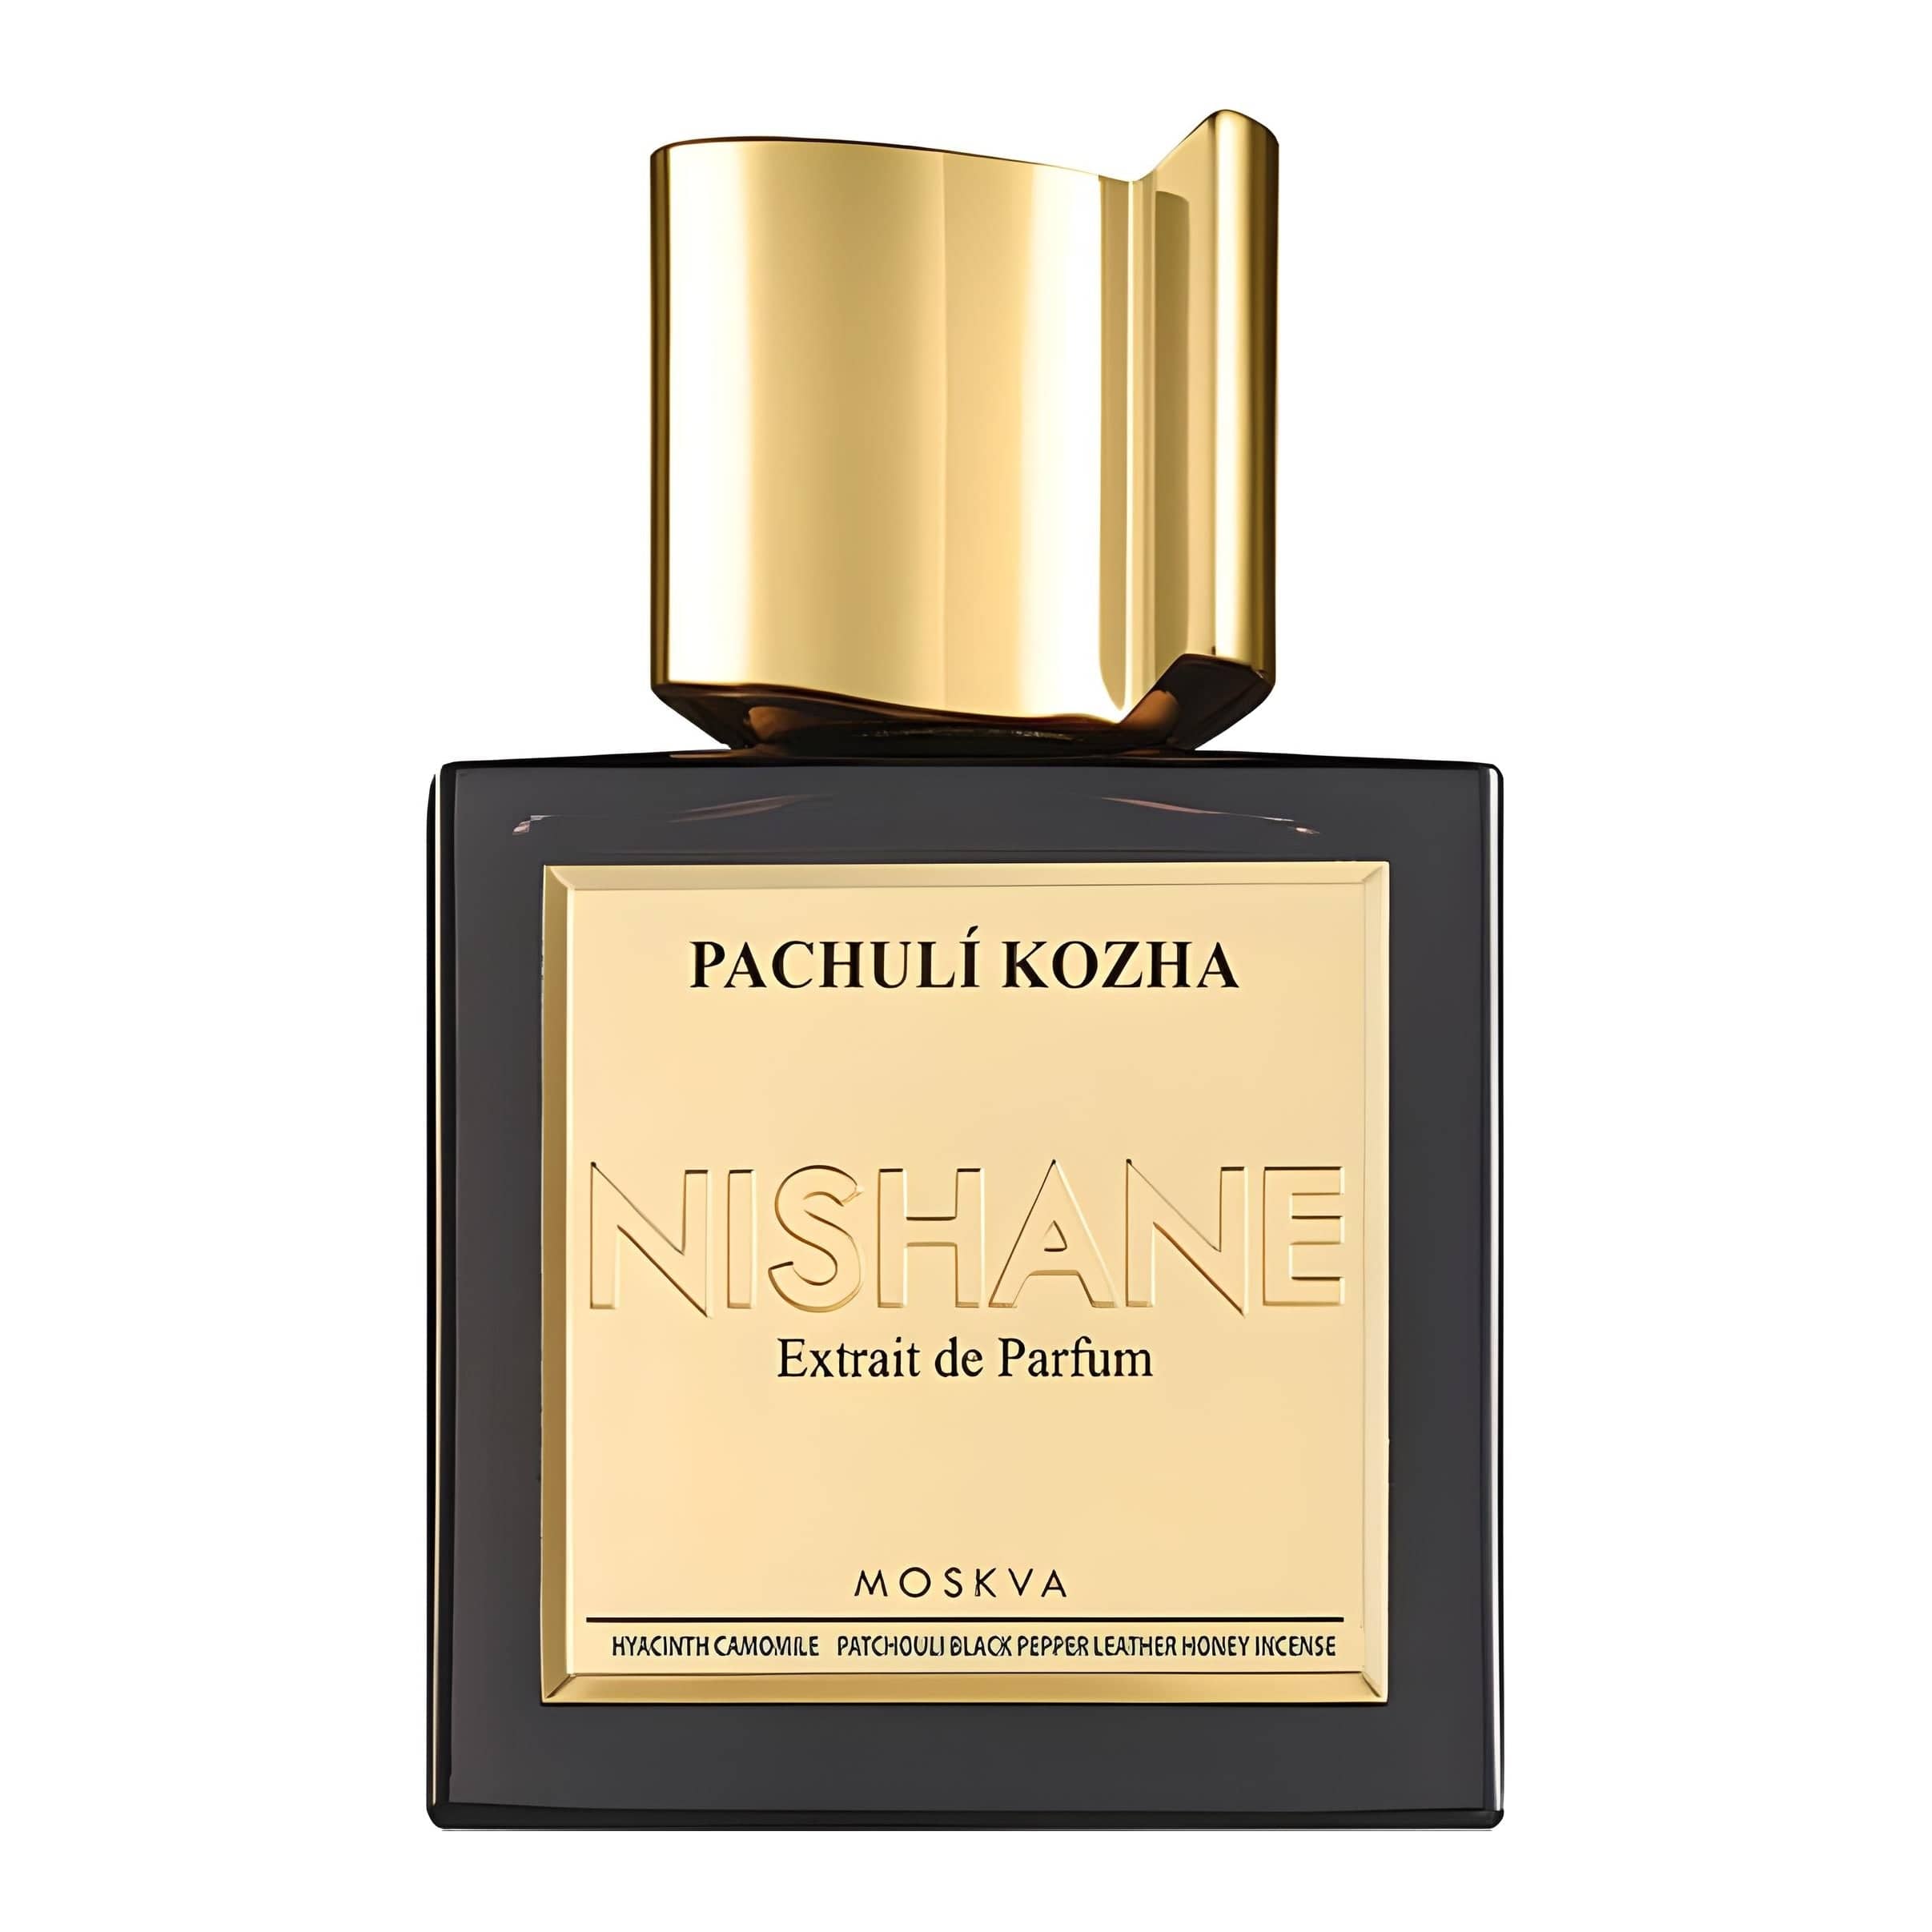 Pachuli Kozha Eau de Parfum